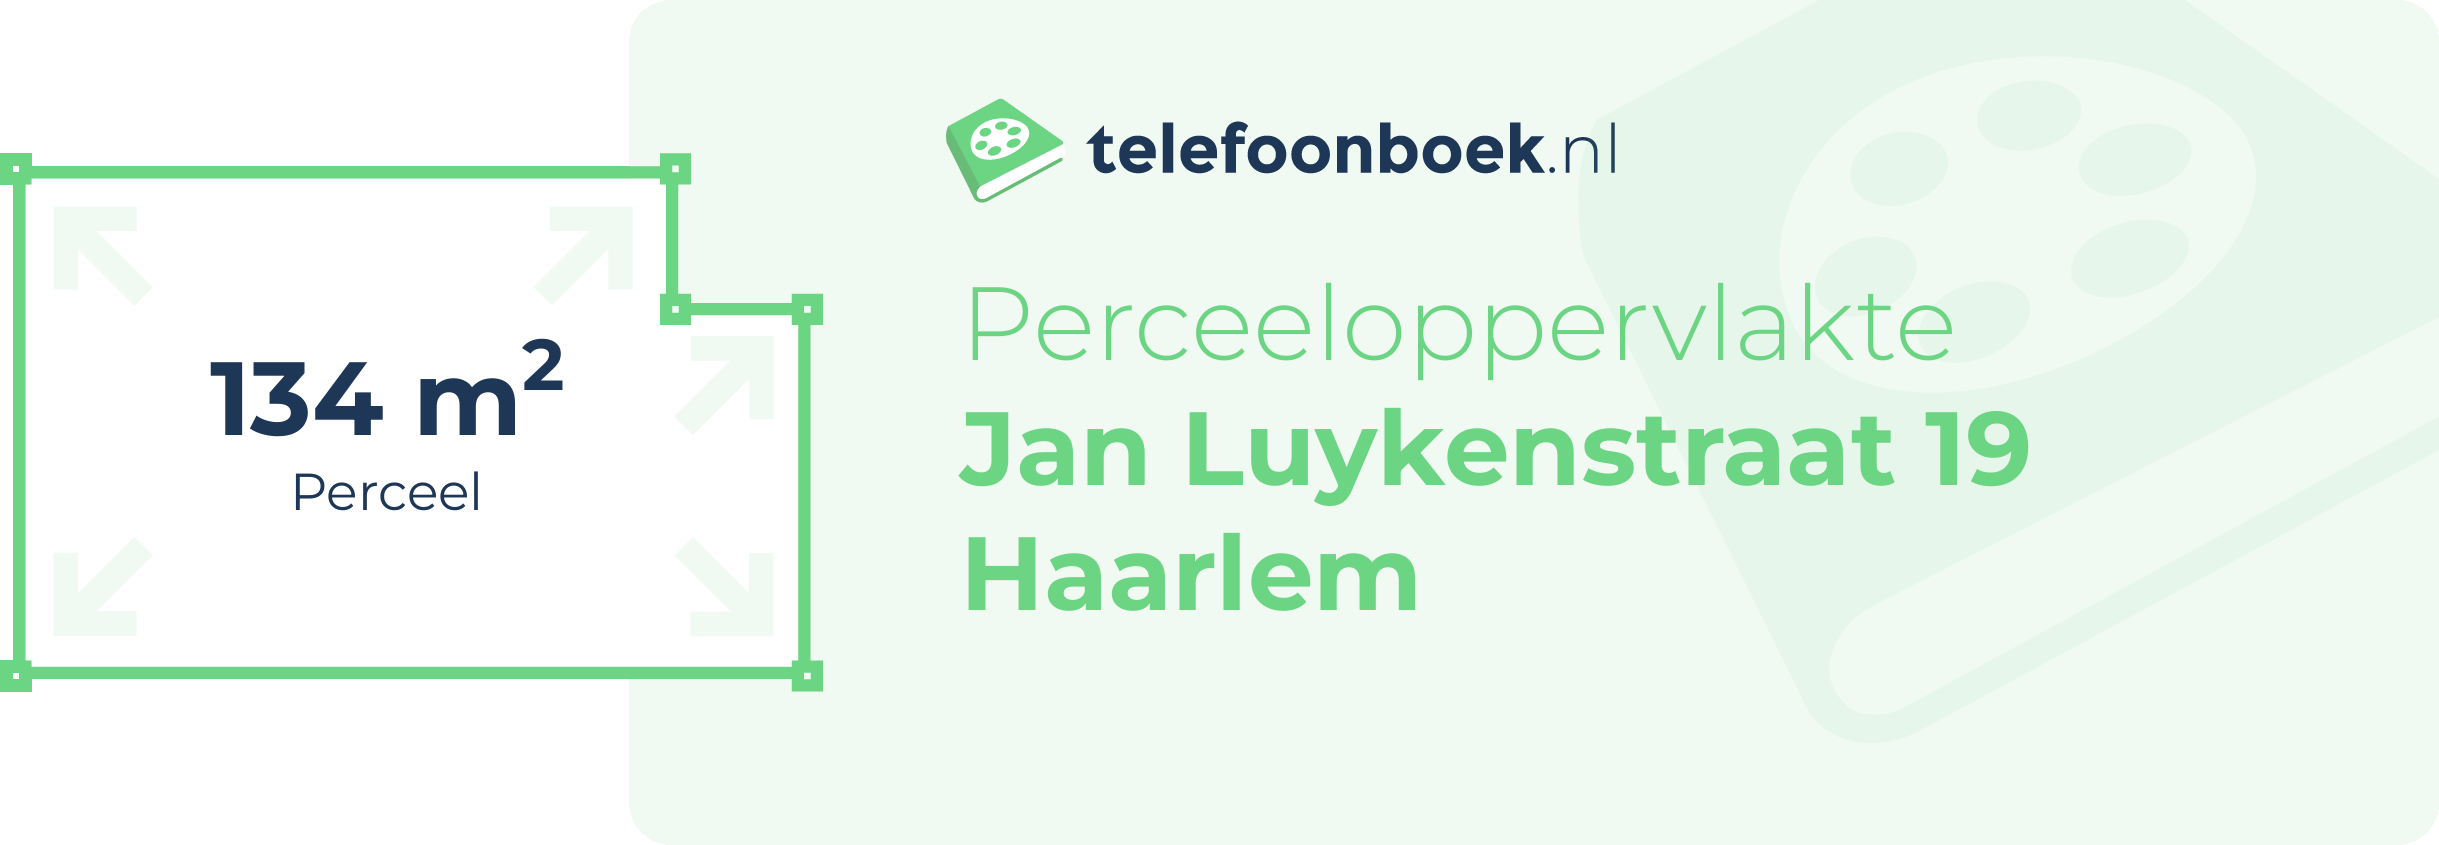 Perceeloppervlakte Jan Luykenstraat 19 Haarlem